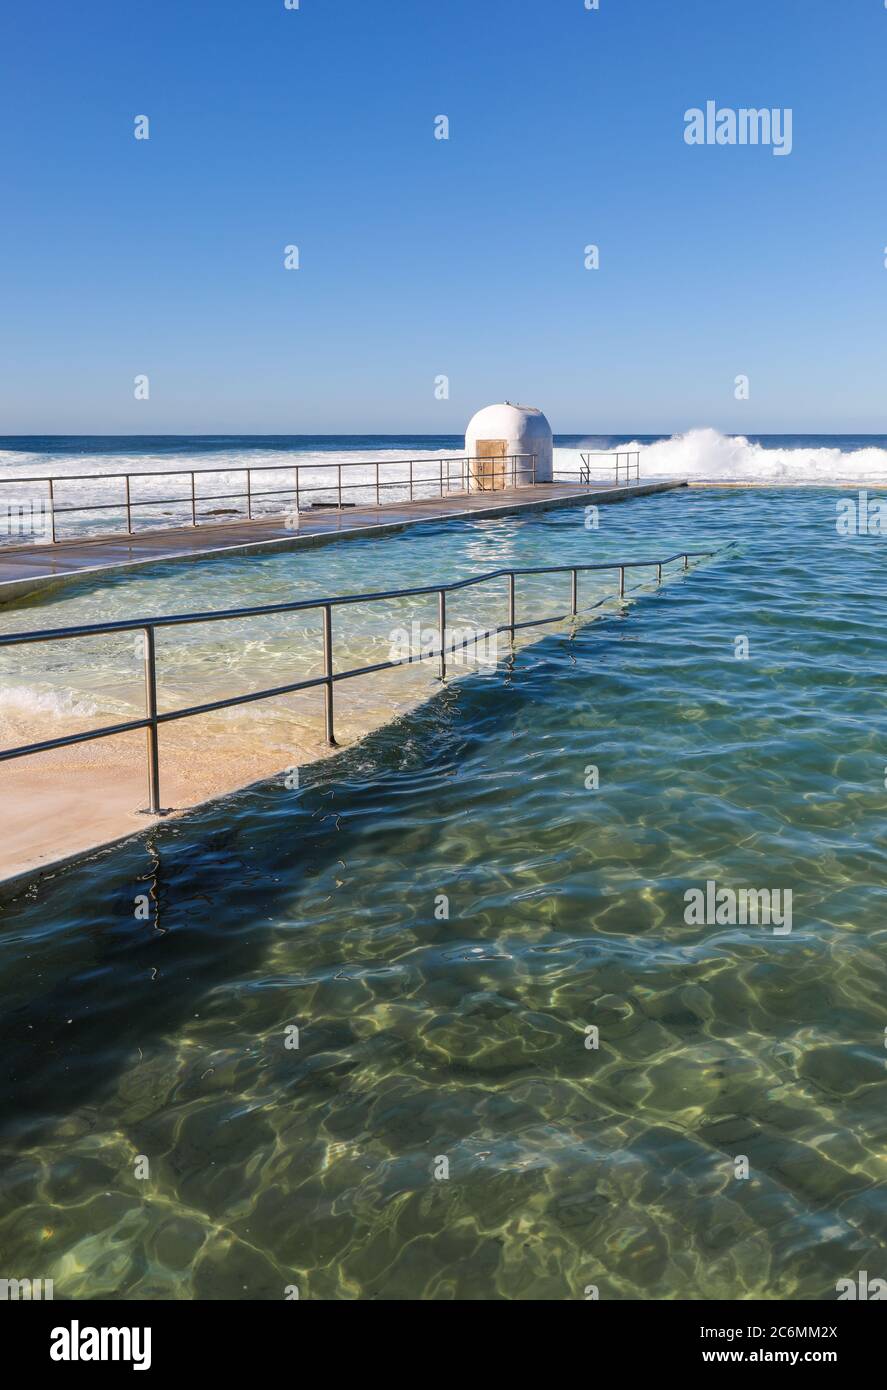 Merewether bains à Newcastle en Nouvelle-Galles du Sud l'Australie est l'une des plus grandes piscines d'eau salée en Australie. Les mises à niveau récentes incluent une rampe d'accès pour plus de facilité Banque D'Images